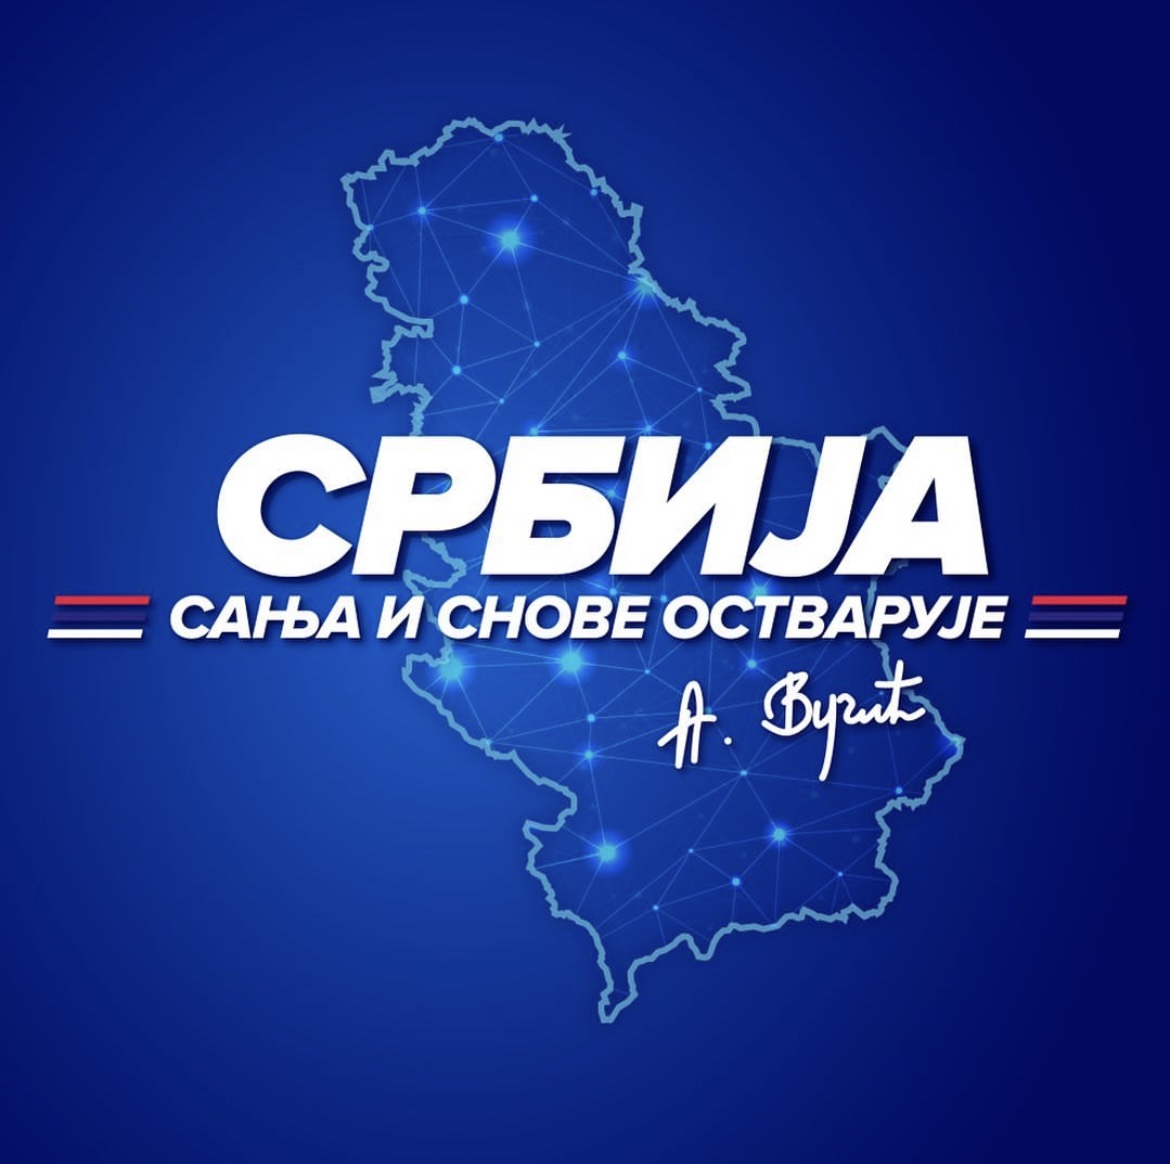 Predsednik Srbije Predsednik  Vučić danas na mitingu  “Srbija sanja i snove ostvaruje” u   Pančevu